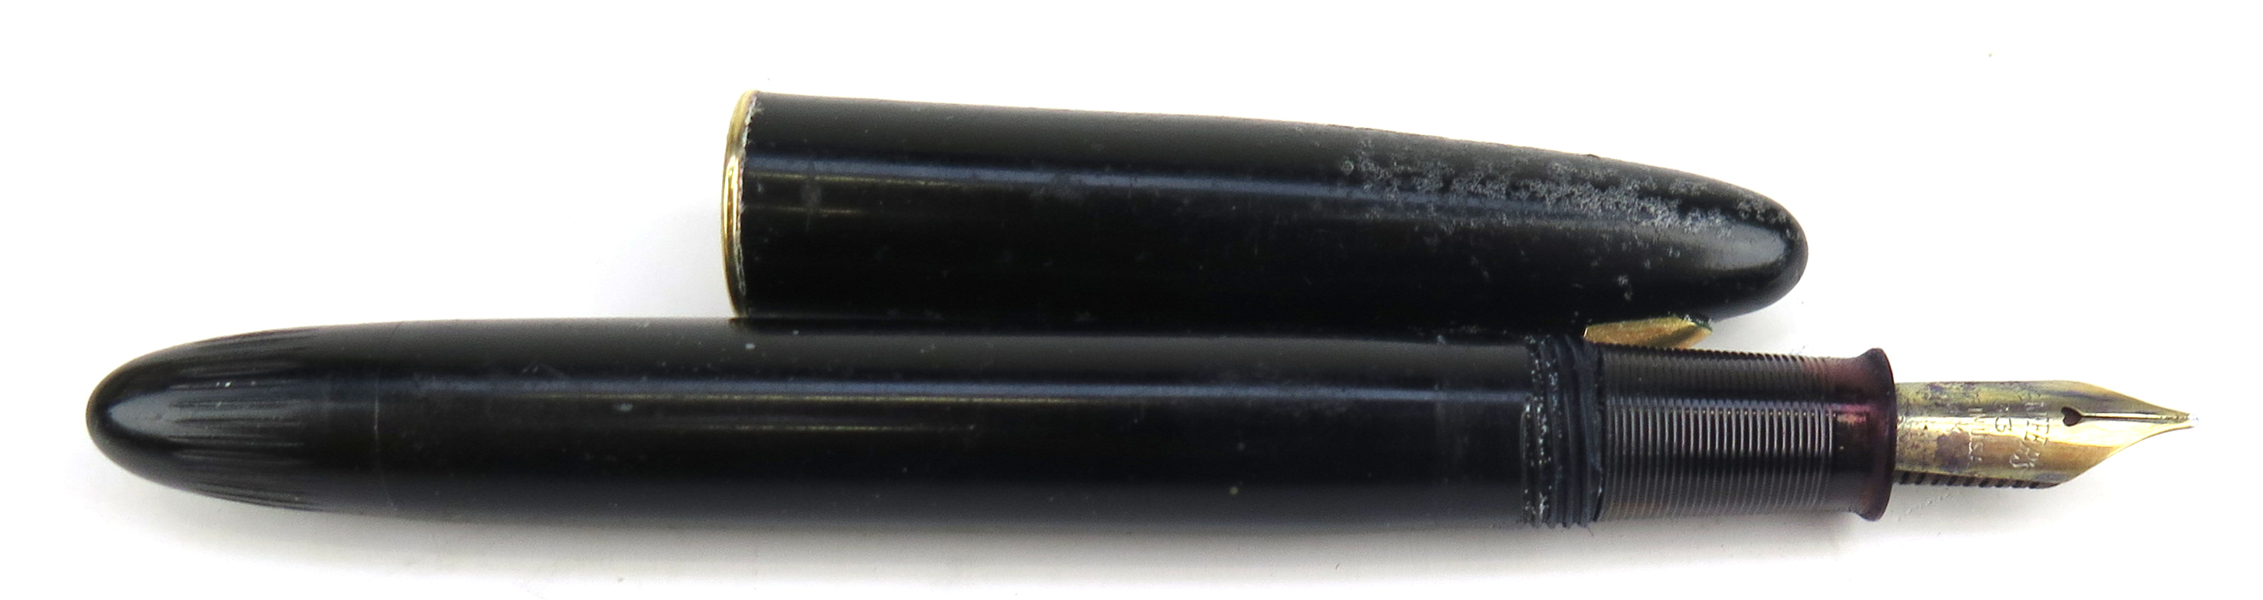 Reservoirpenna, Sheaffer, 1900-talets 1 hälft, 33-stift i 14 karat rödguld, _24161a_lg.jpeg